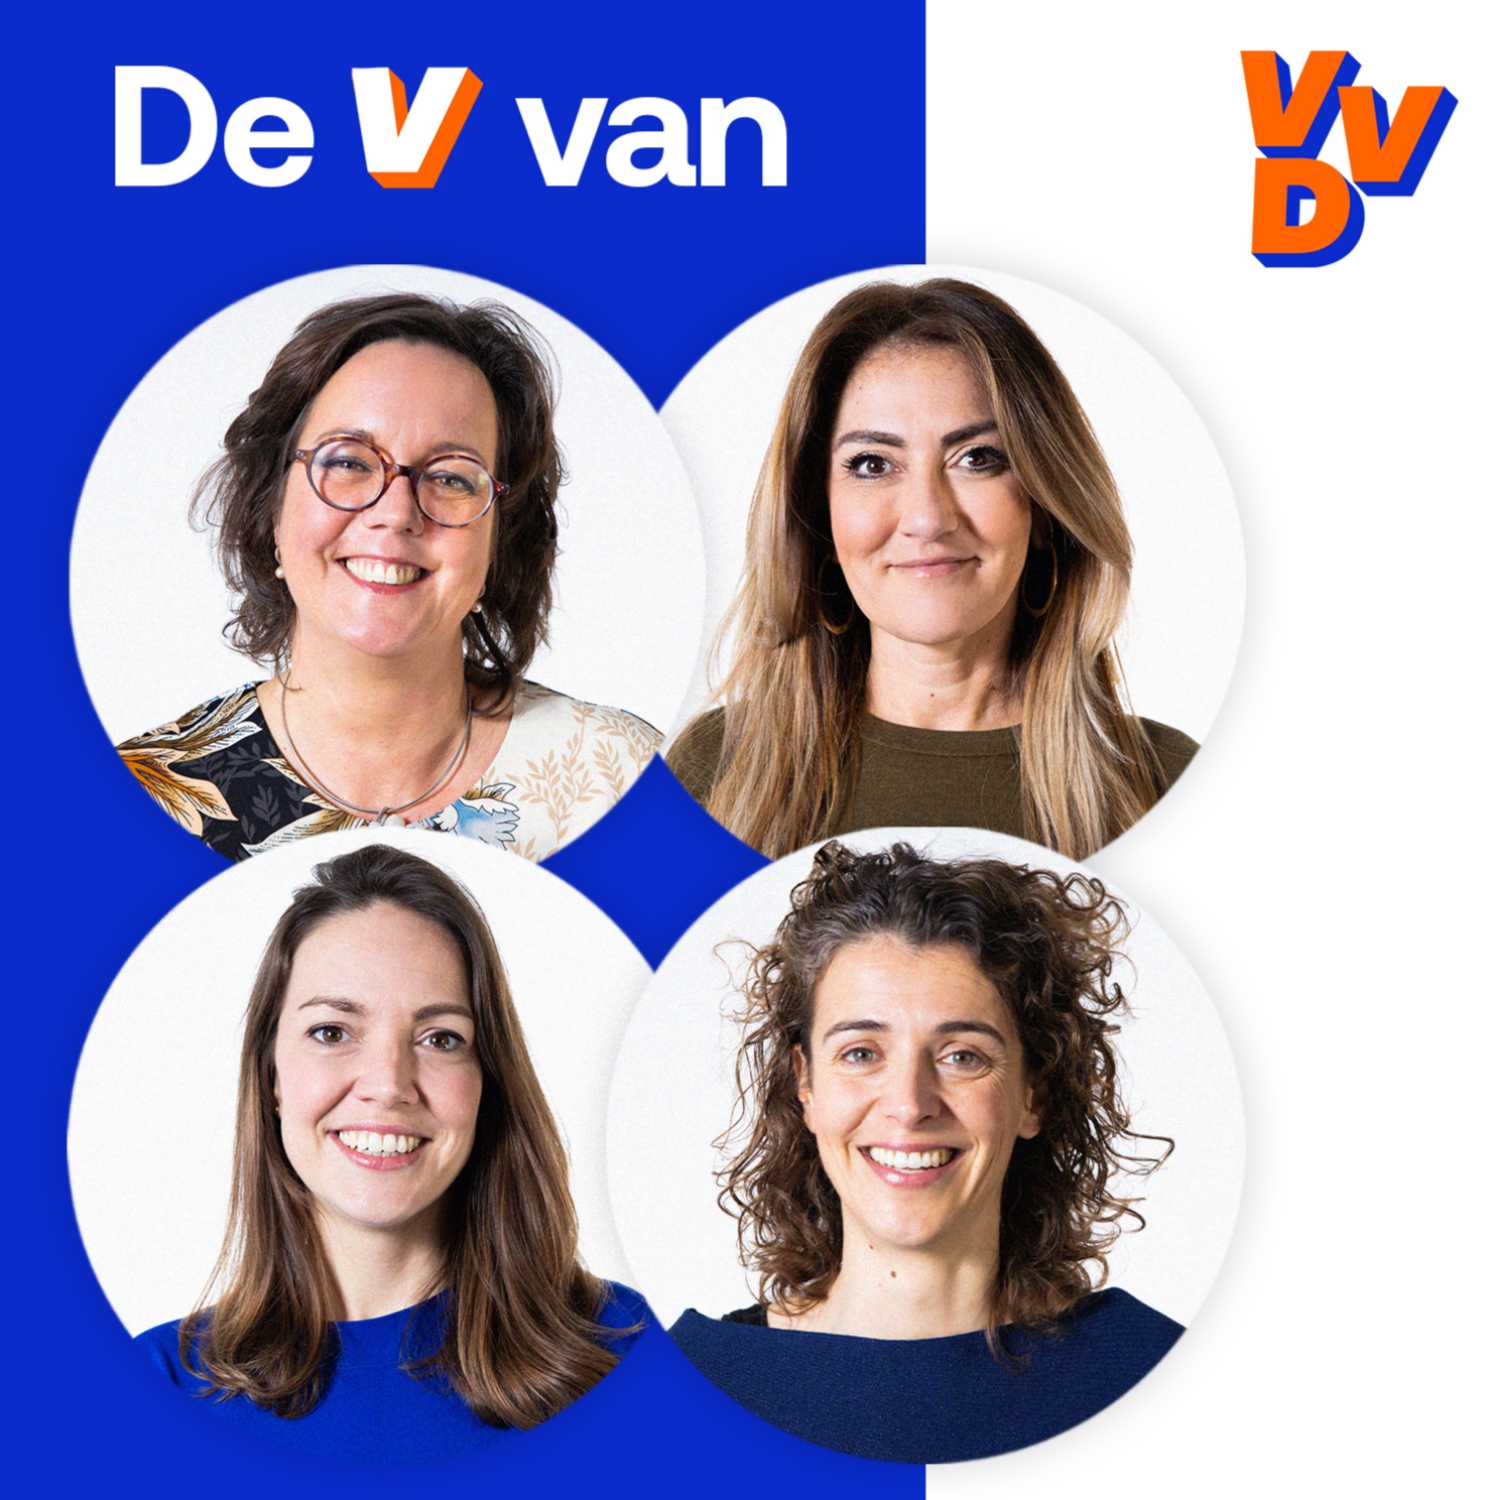 De V van VVD